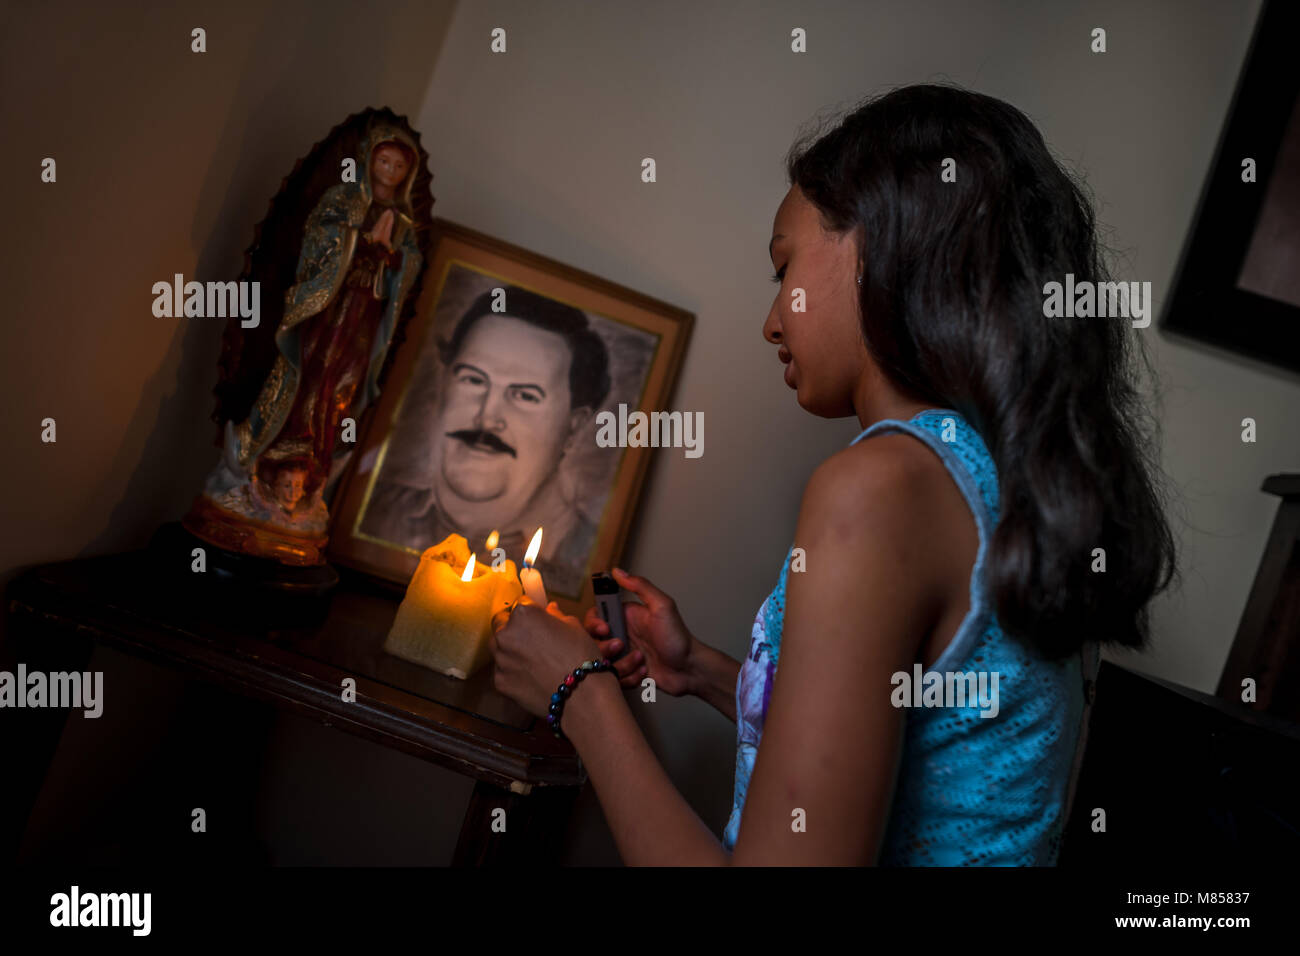 Ein kolumbianischer Mädchen leuchtet die Kerzen am Altar der Drogenbaron Pablo Escobar, der im Wohnzimmer Ecke eines Hauses in Medellín, Kolumbien. Stockfoto